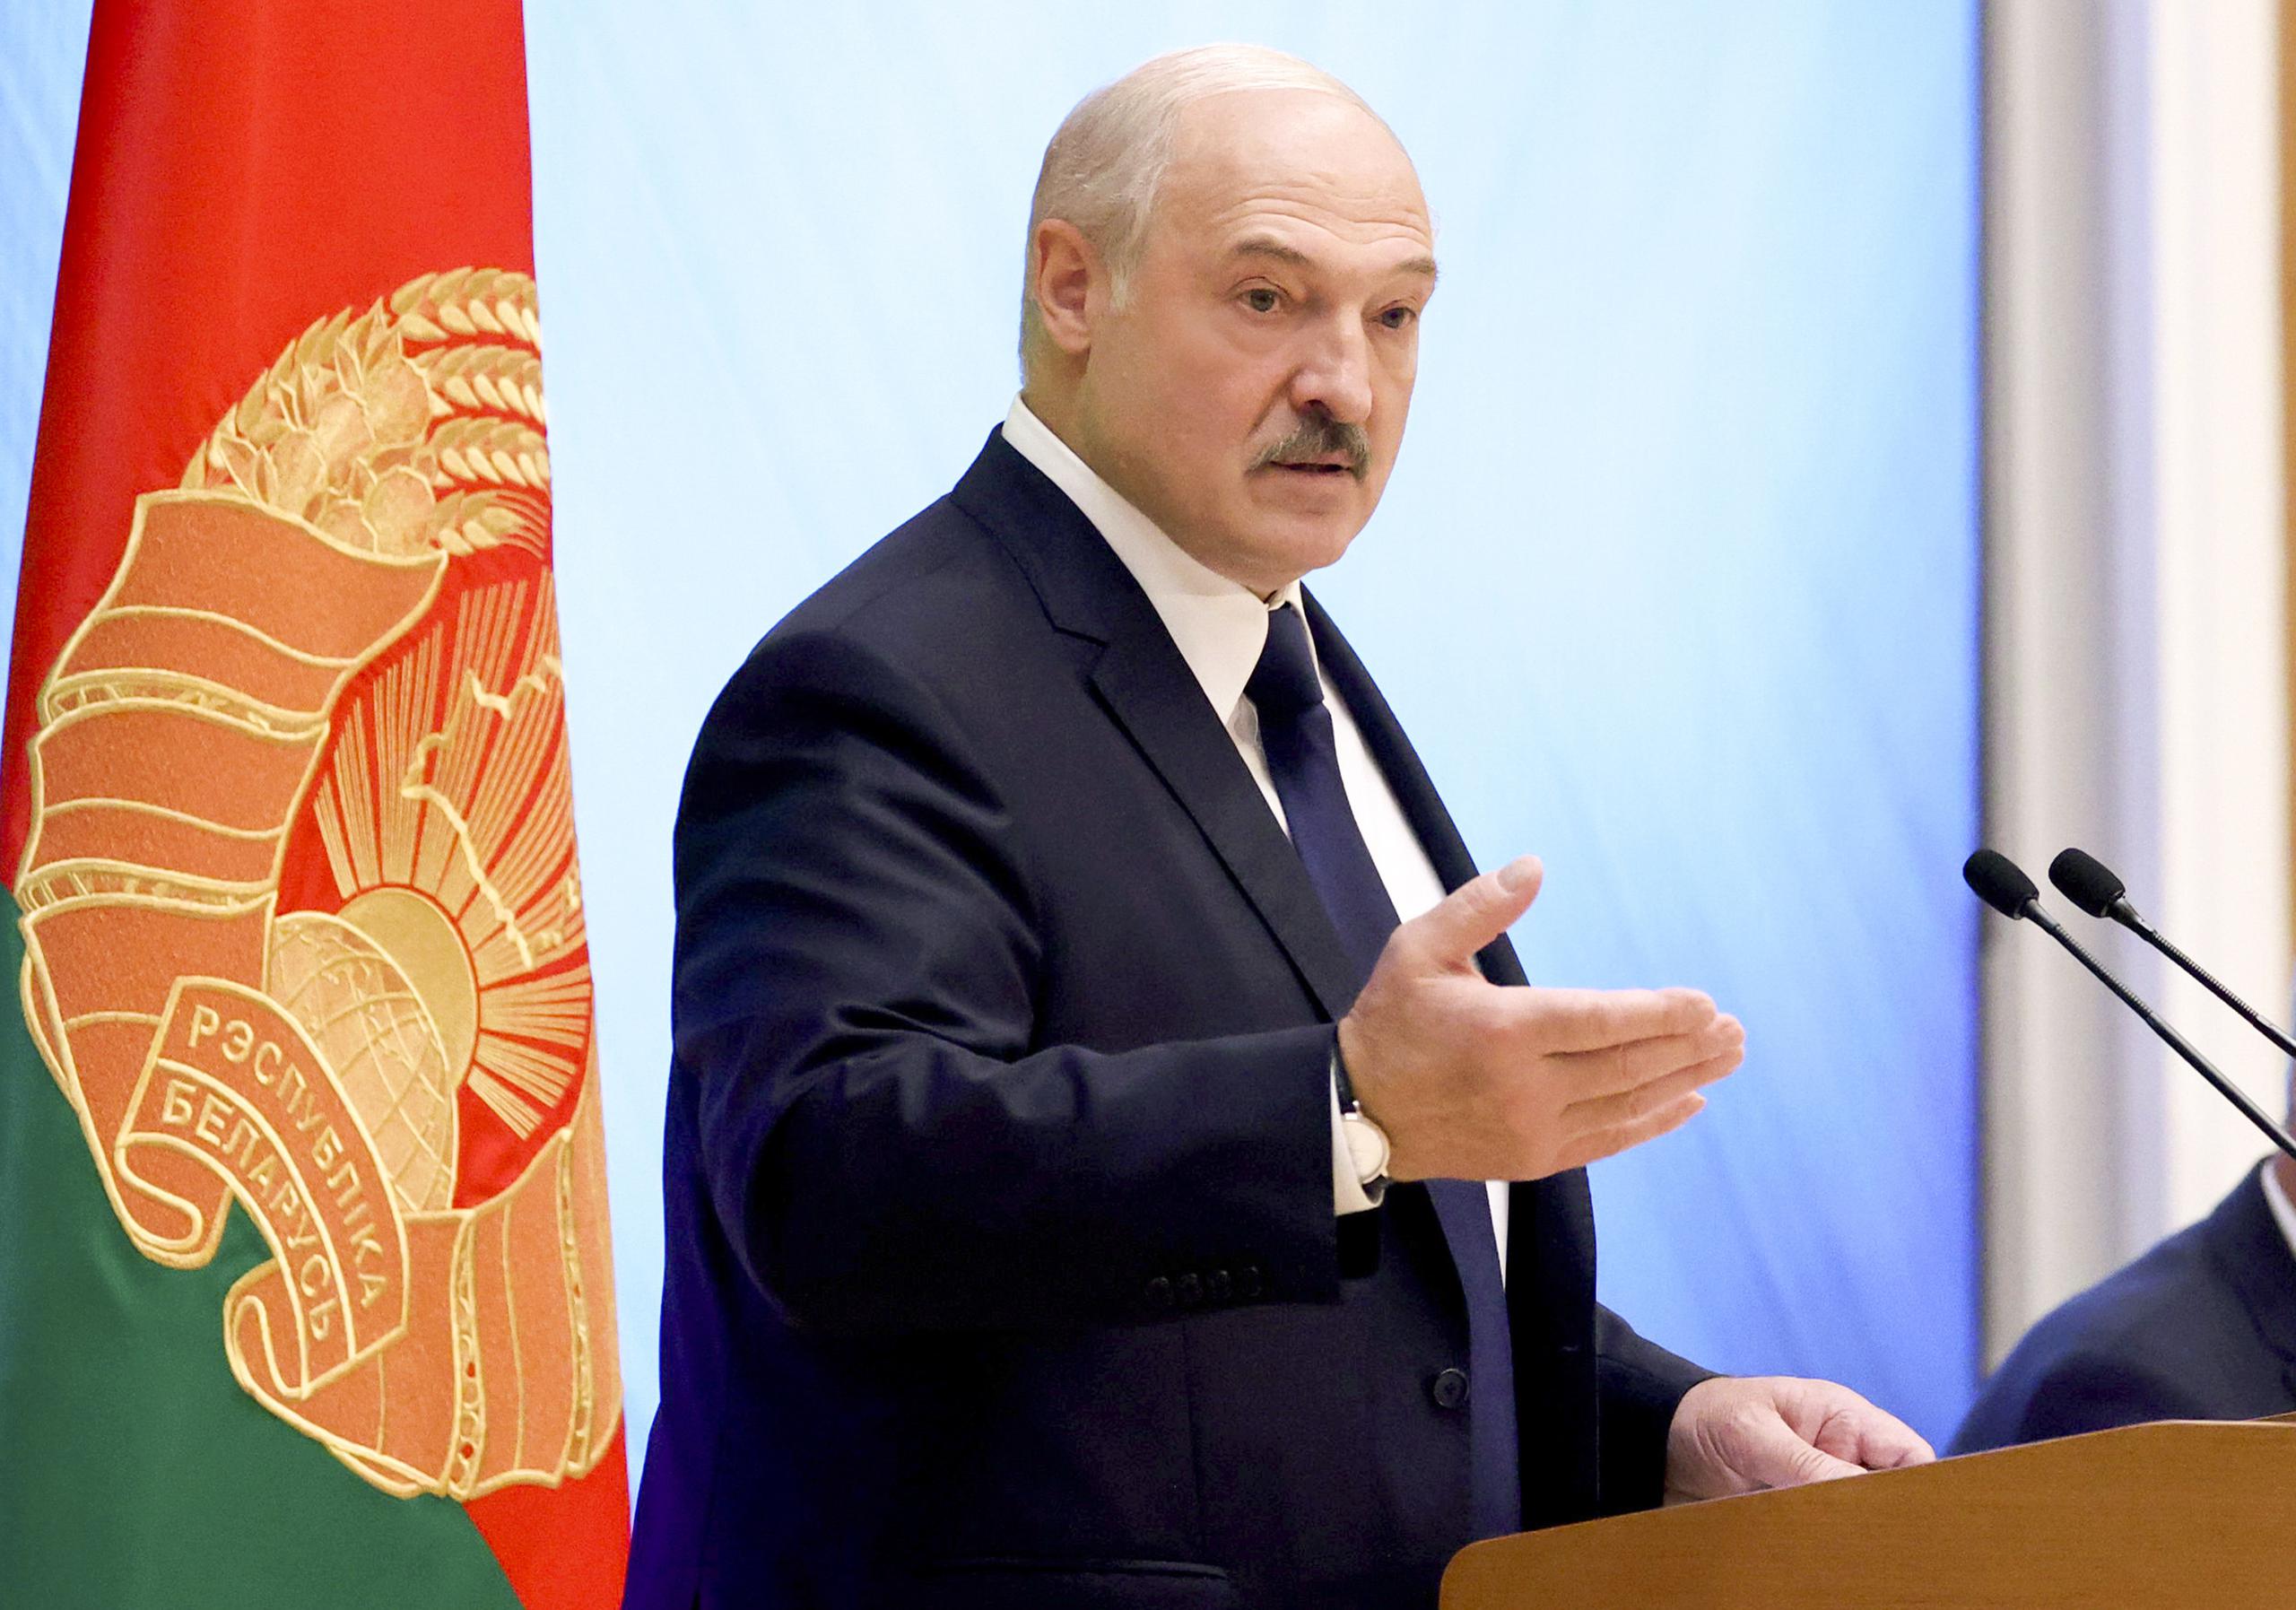 El presidente de Bielorrusia, Alexander Lukashenko, durante un encuentro con activistas políticos de su país, en Minsk, Bielorrusia.